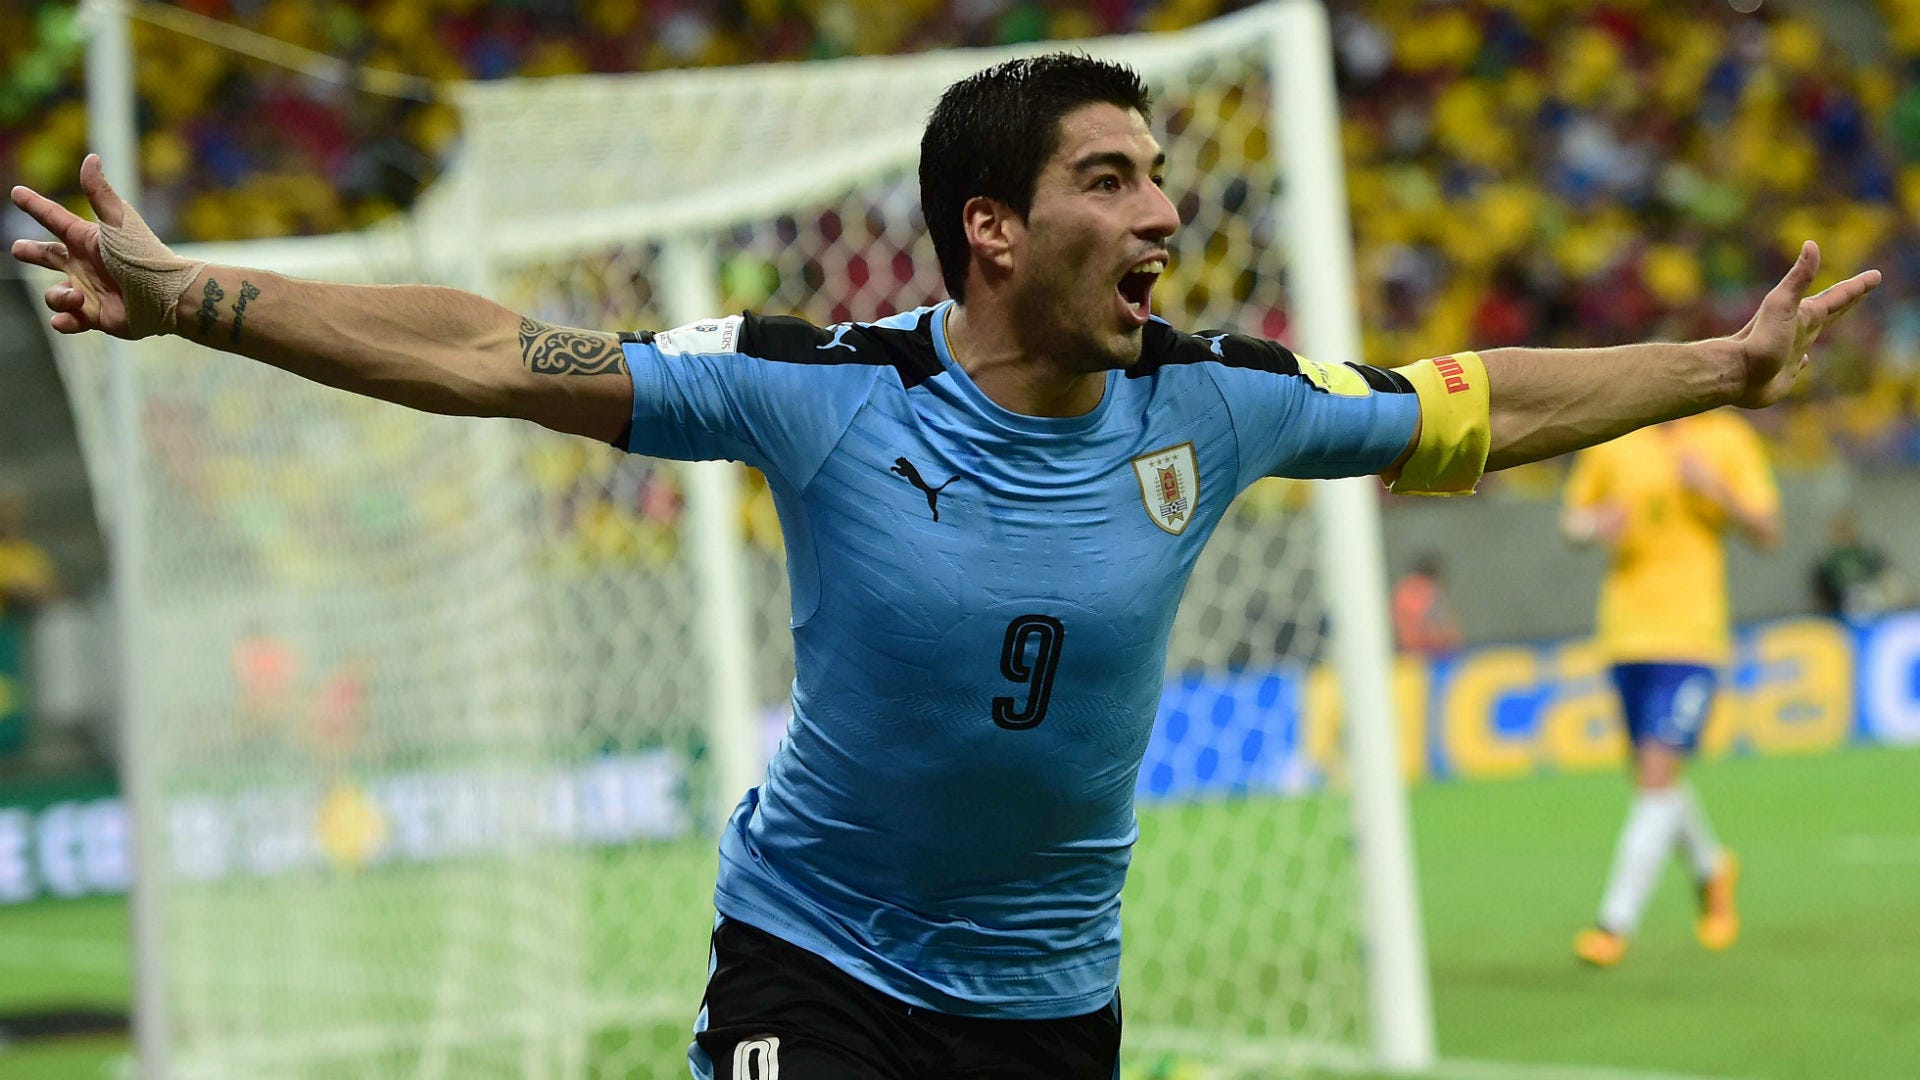 Mundial 2022 Qatar: ¿Por qué Uruguay lleva 4 estrellas en el escudo de la  camiseta si ha ganado 2 mundiales?